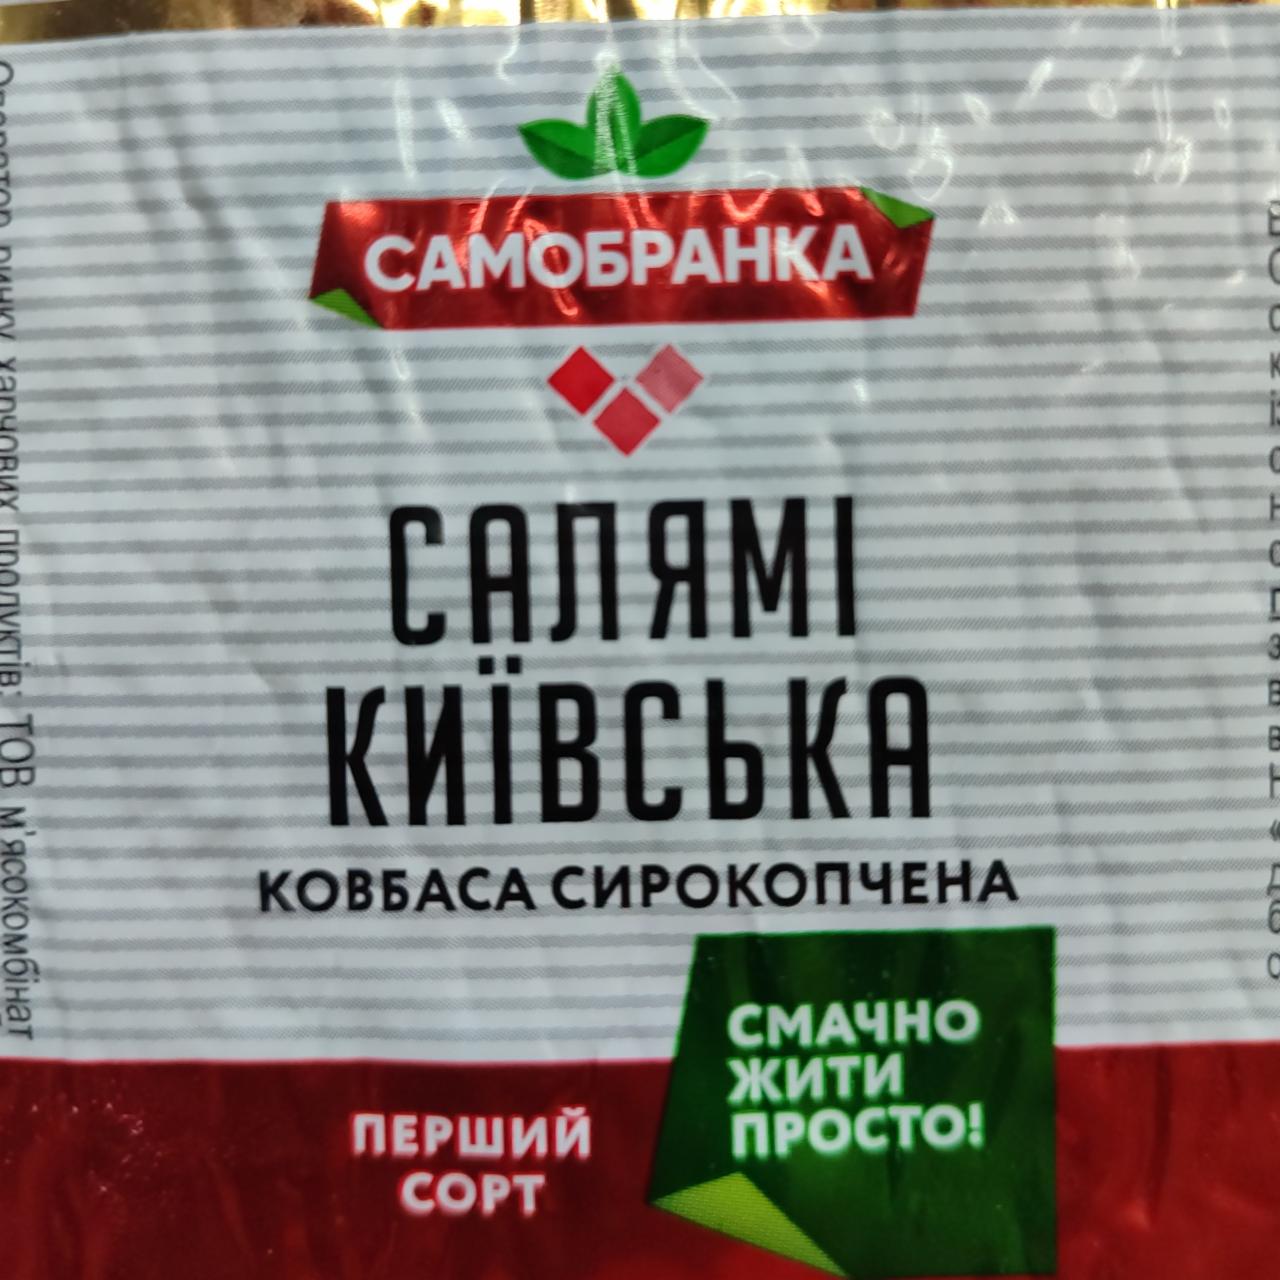 Фото - колбаса сырокопченая салями киевская Самобранка